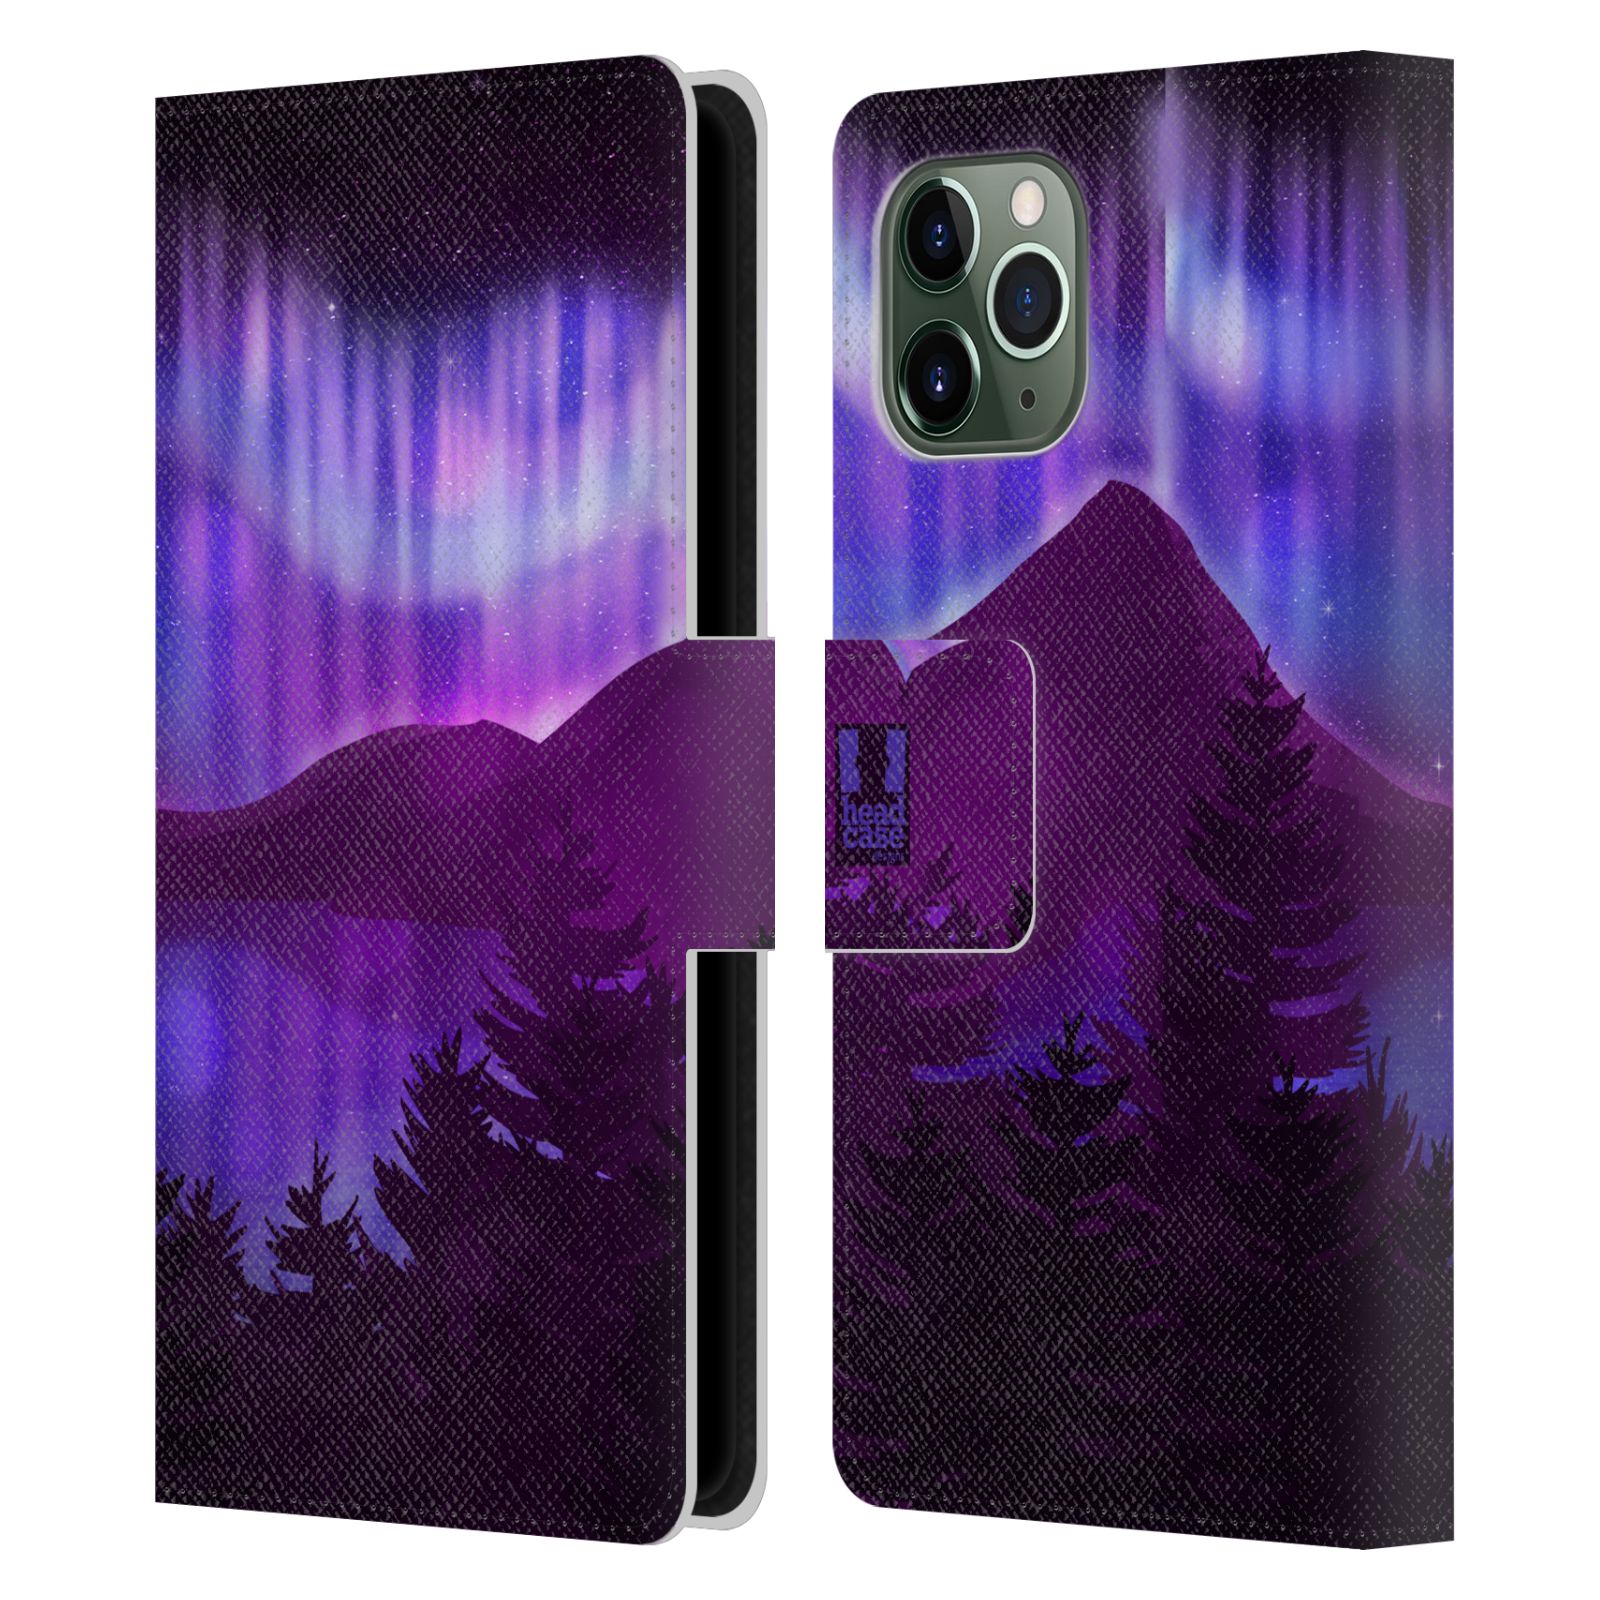 Pouzdro na mobil Apple Iphone 11 Pro - HEAD CASE - Hory a lesy fialový odstín